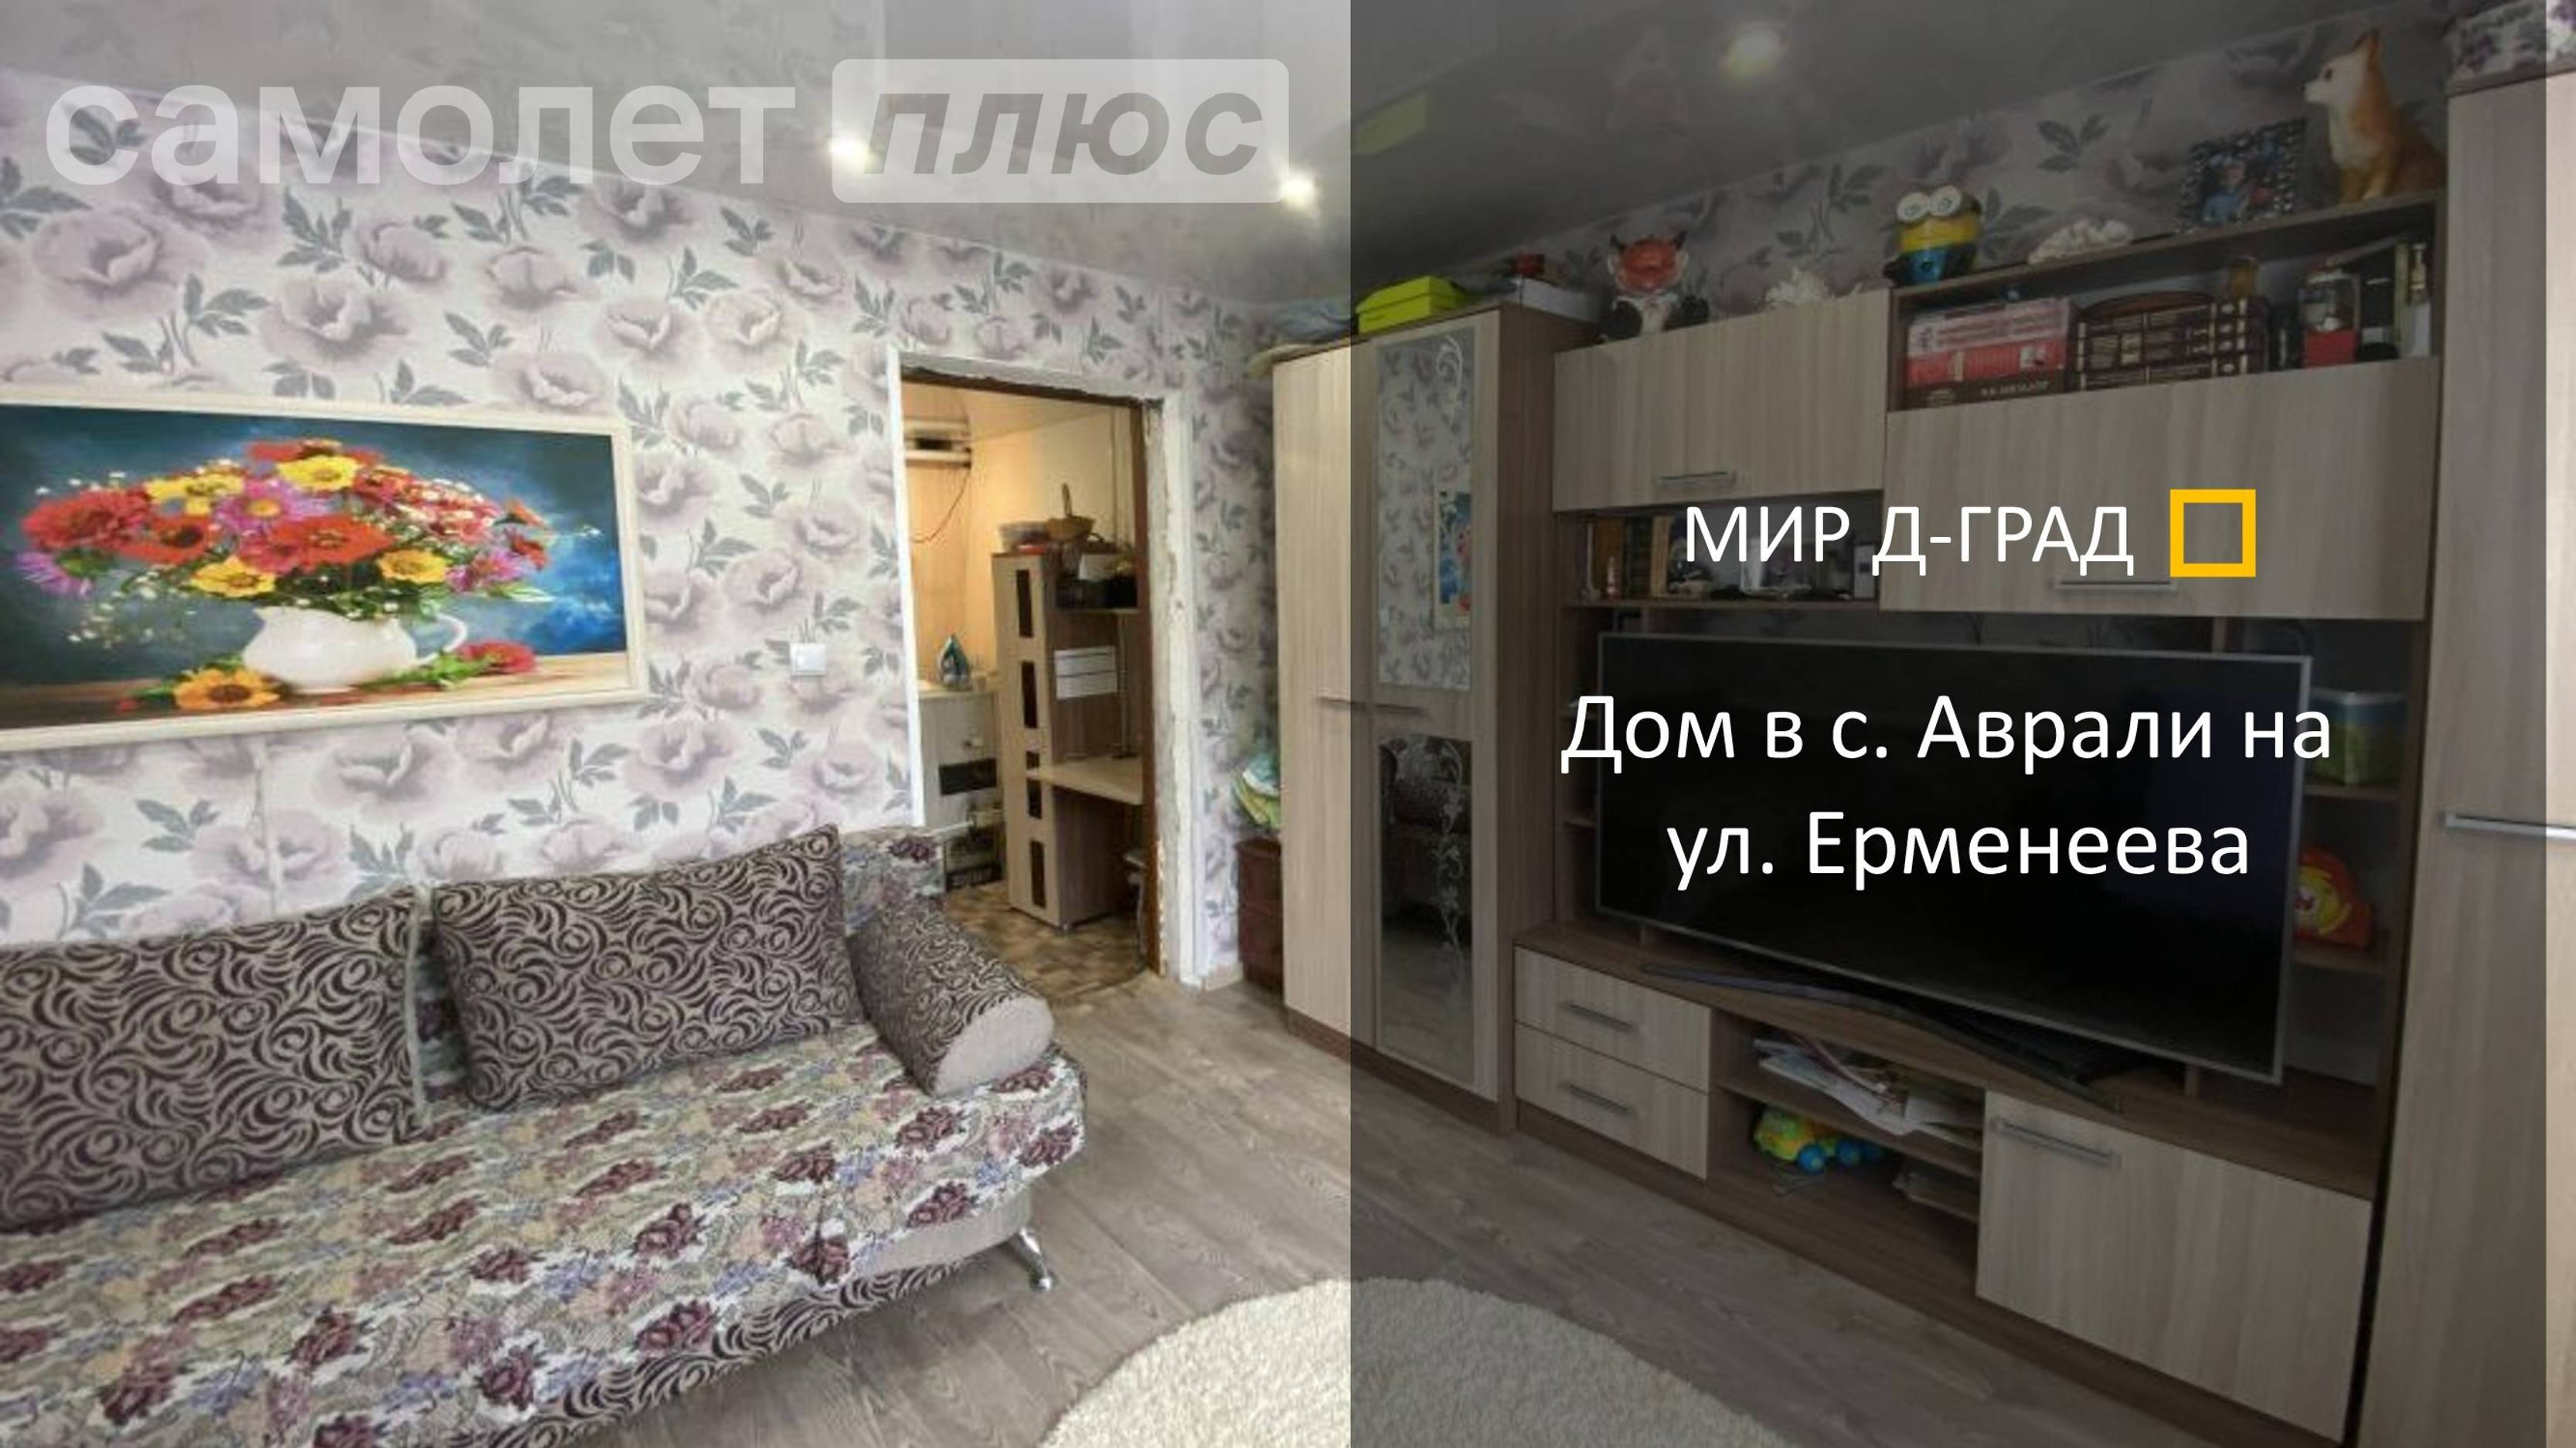 Дом в с. Аврали на ул. Ерменеева, 100 м², на участке 40 соток, Ульяновская обл.